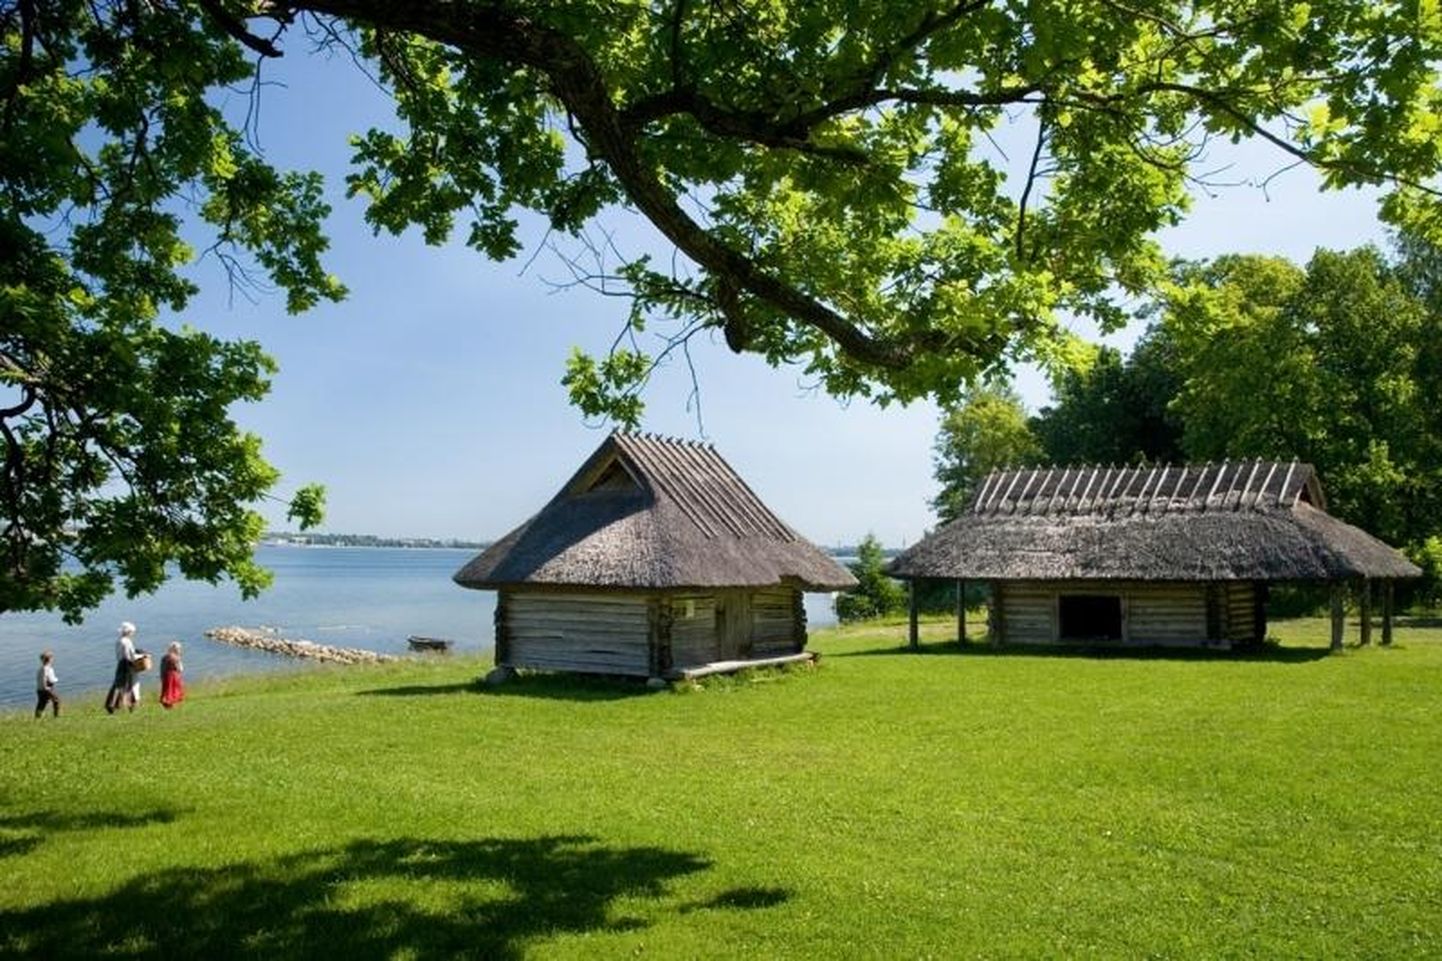 Õppekäikudel külastatakse muuseume, kino-, teatri- või kontsertetendusi, käiakse ekskursioonidel erinevates Eesti paikades või loodusmatkadel.